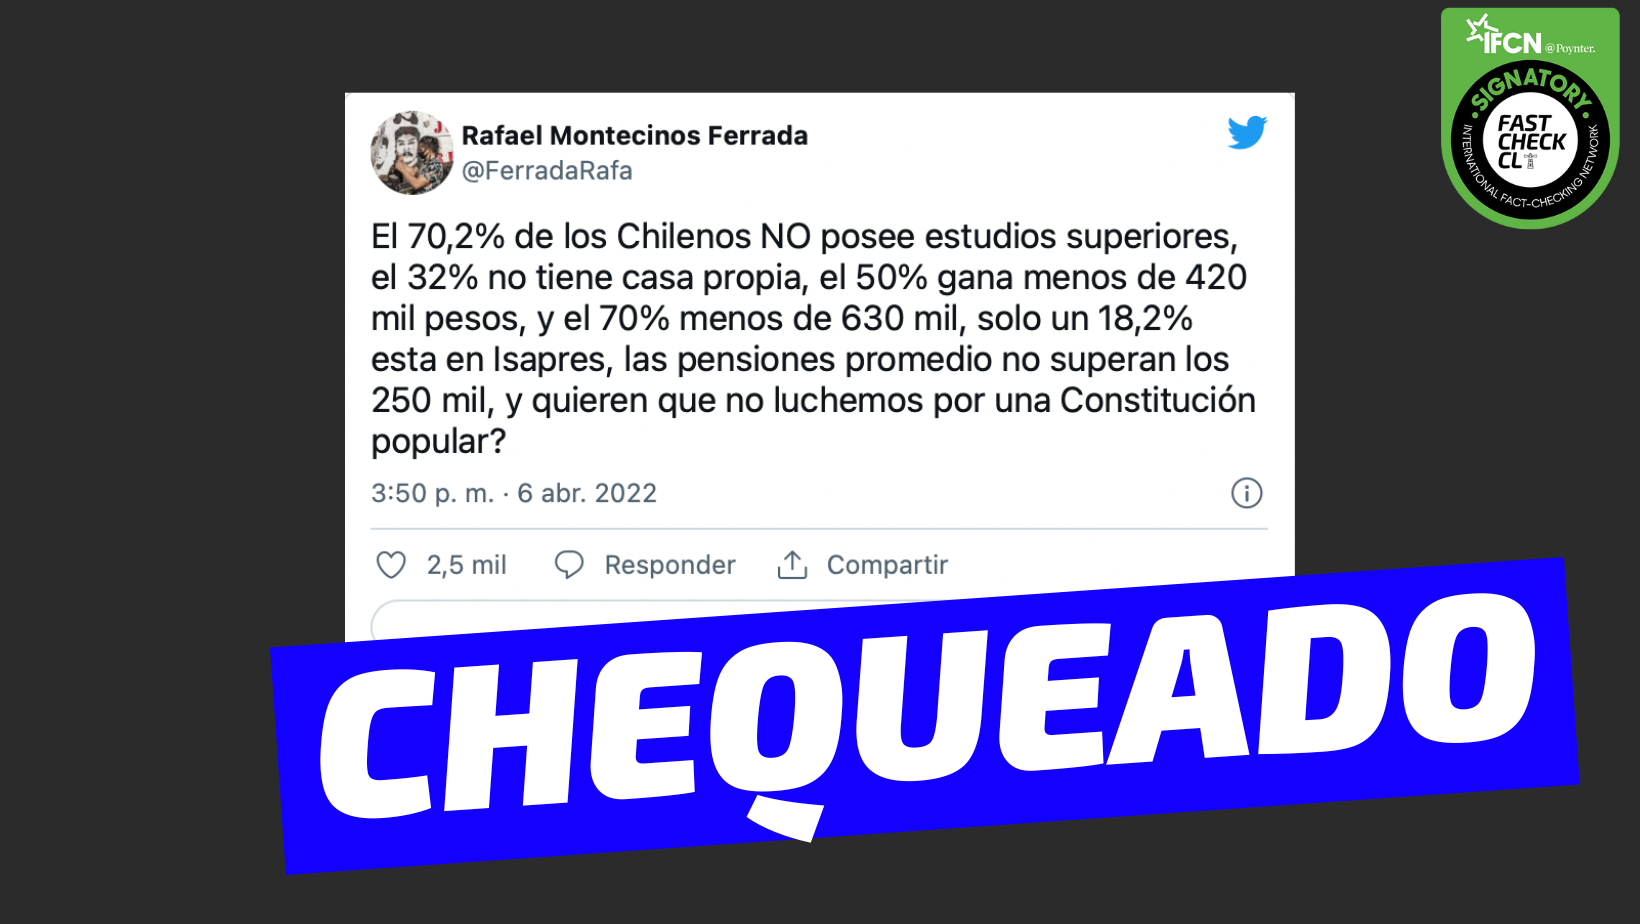 Read more about the article “El 70,2% de los chilenos no posee estudios superiores, el 32% no tiene casa propia, el 50% gana menos de 420 mil pesos, el 70% menos de 630 mil, un 18,2% está en Isapres y las pensiones promedio no superan los 250 mil”: #Chequeado